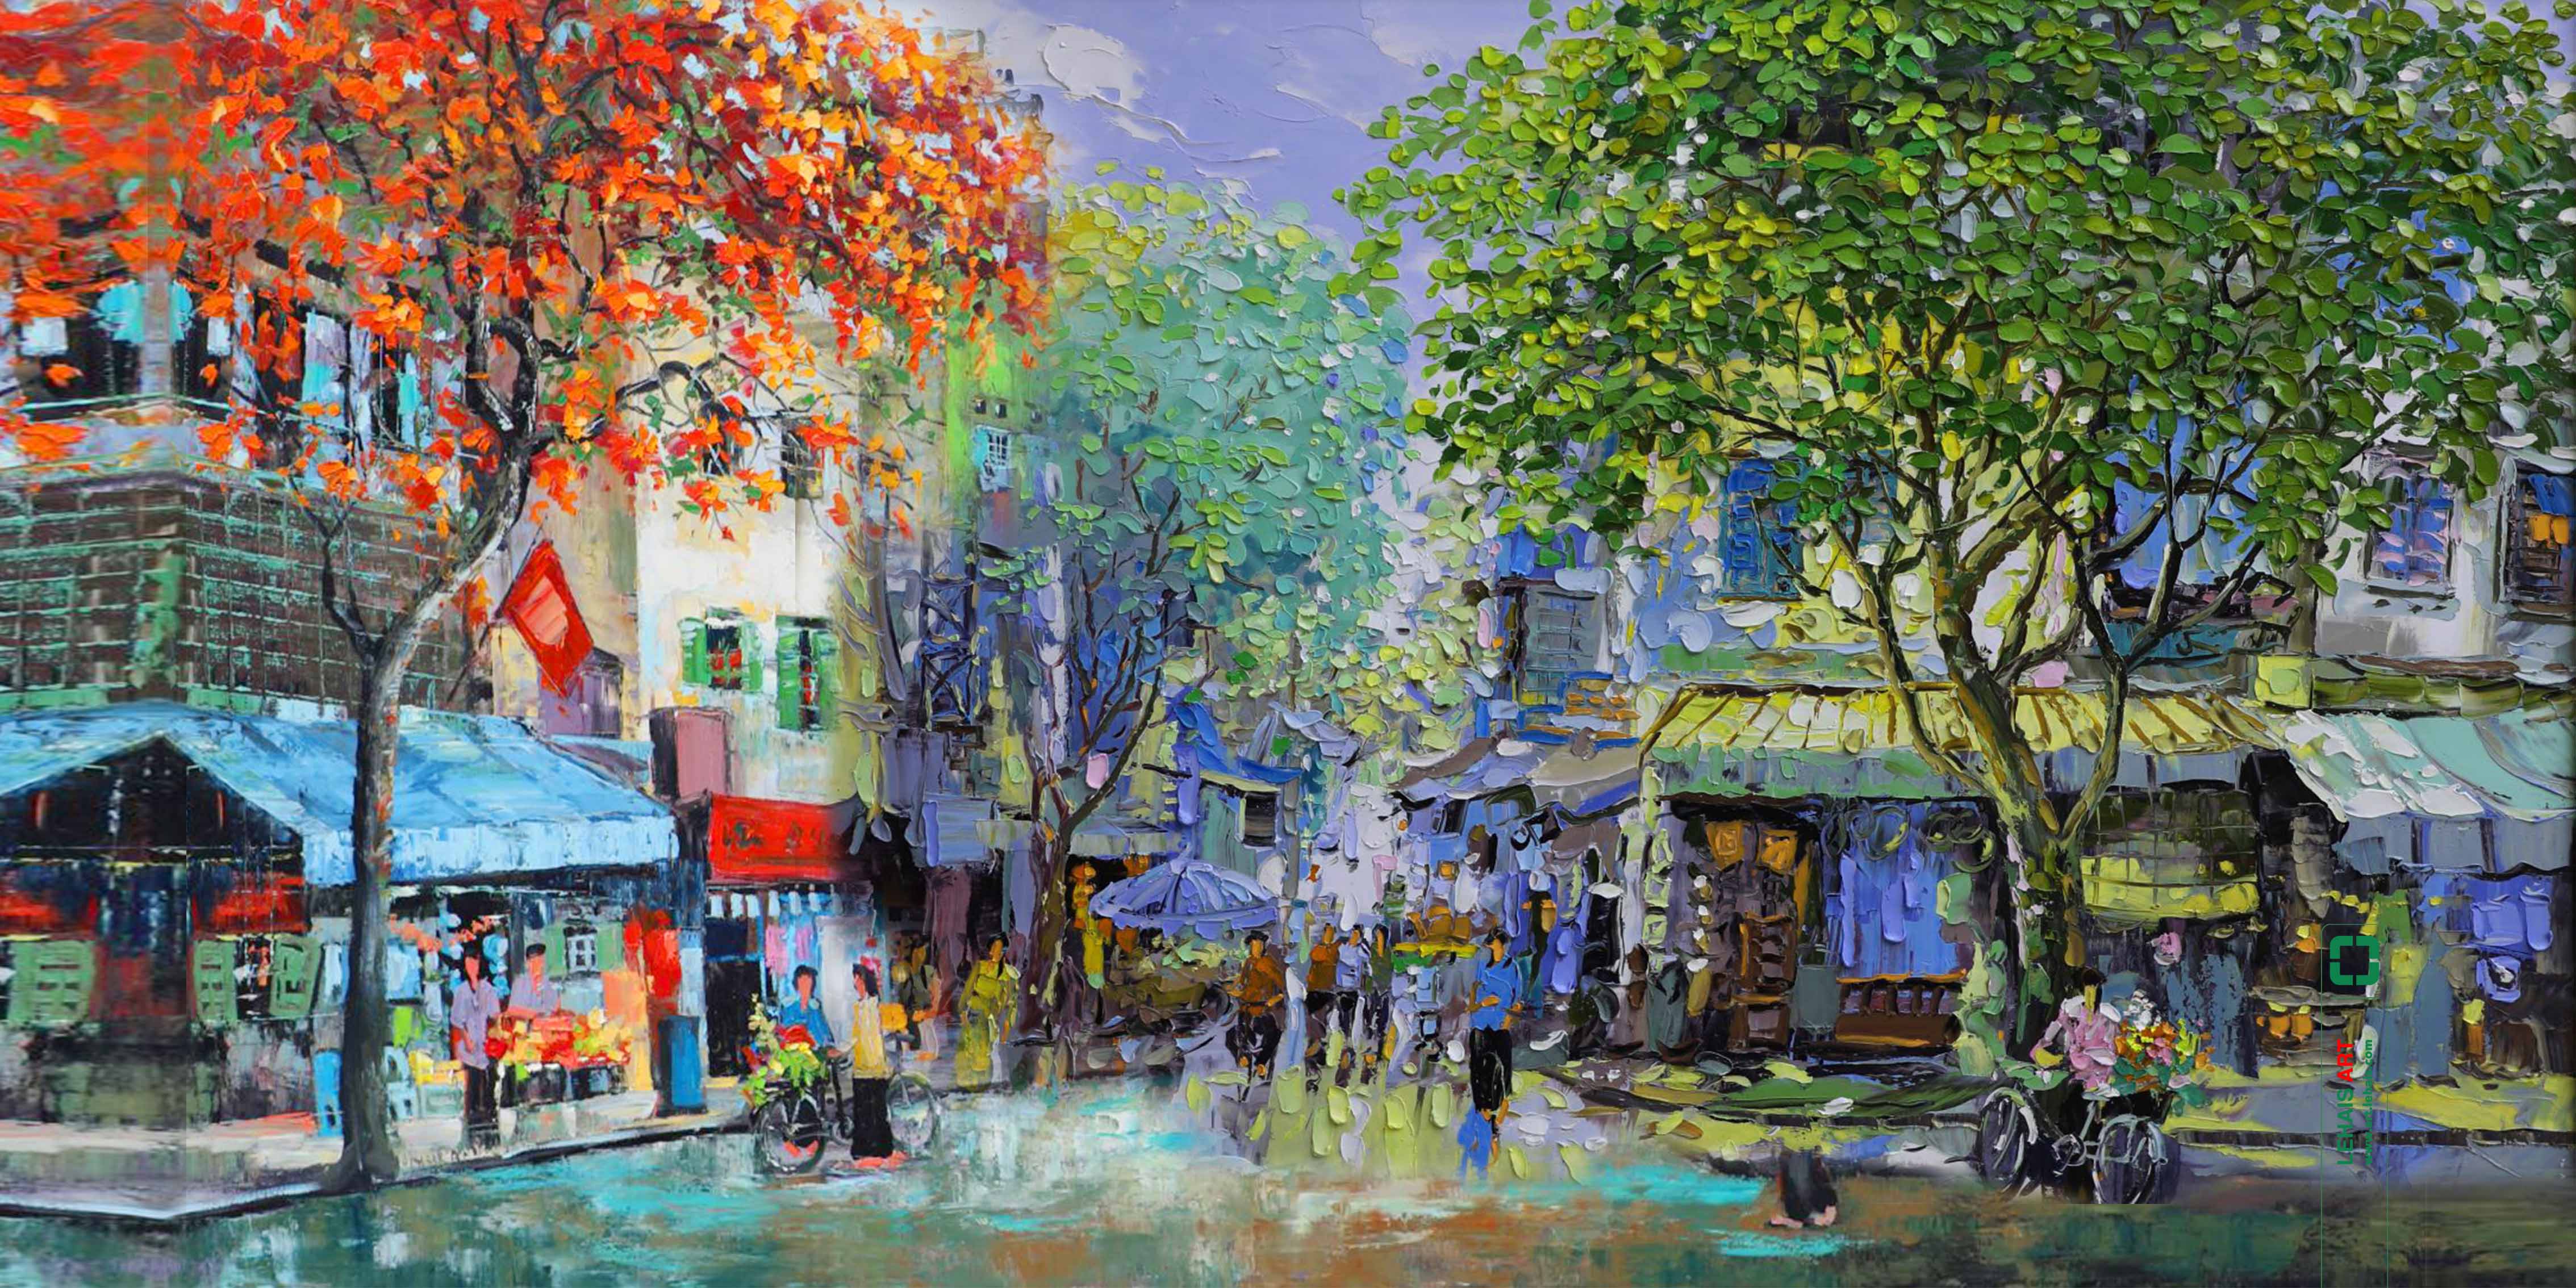 Tranh sơn dầu phố cổ Hà Nội - TSD683LHAR